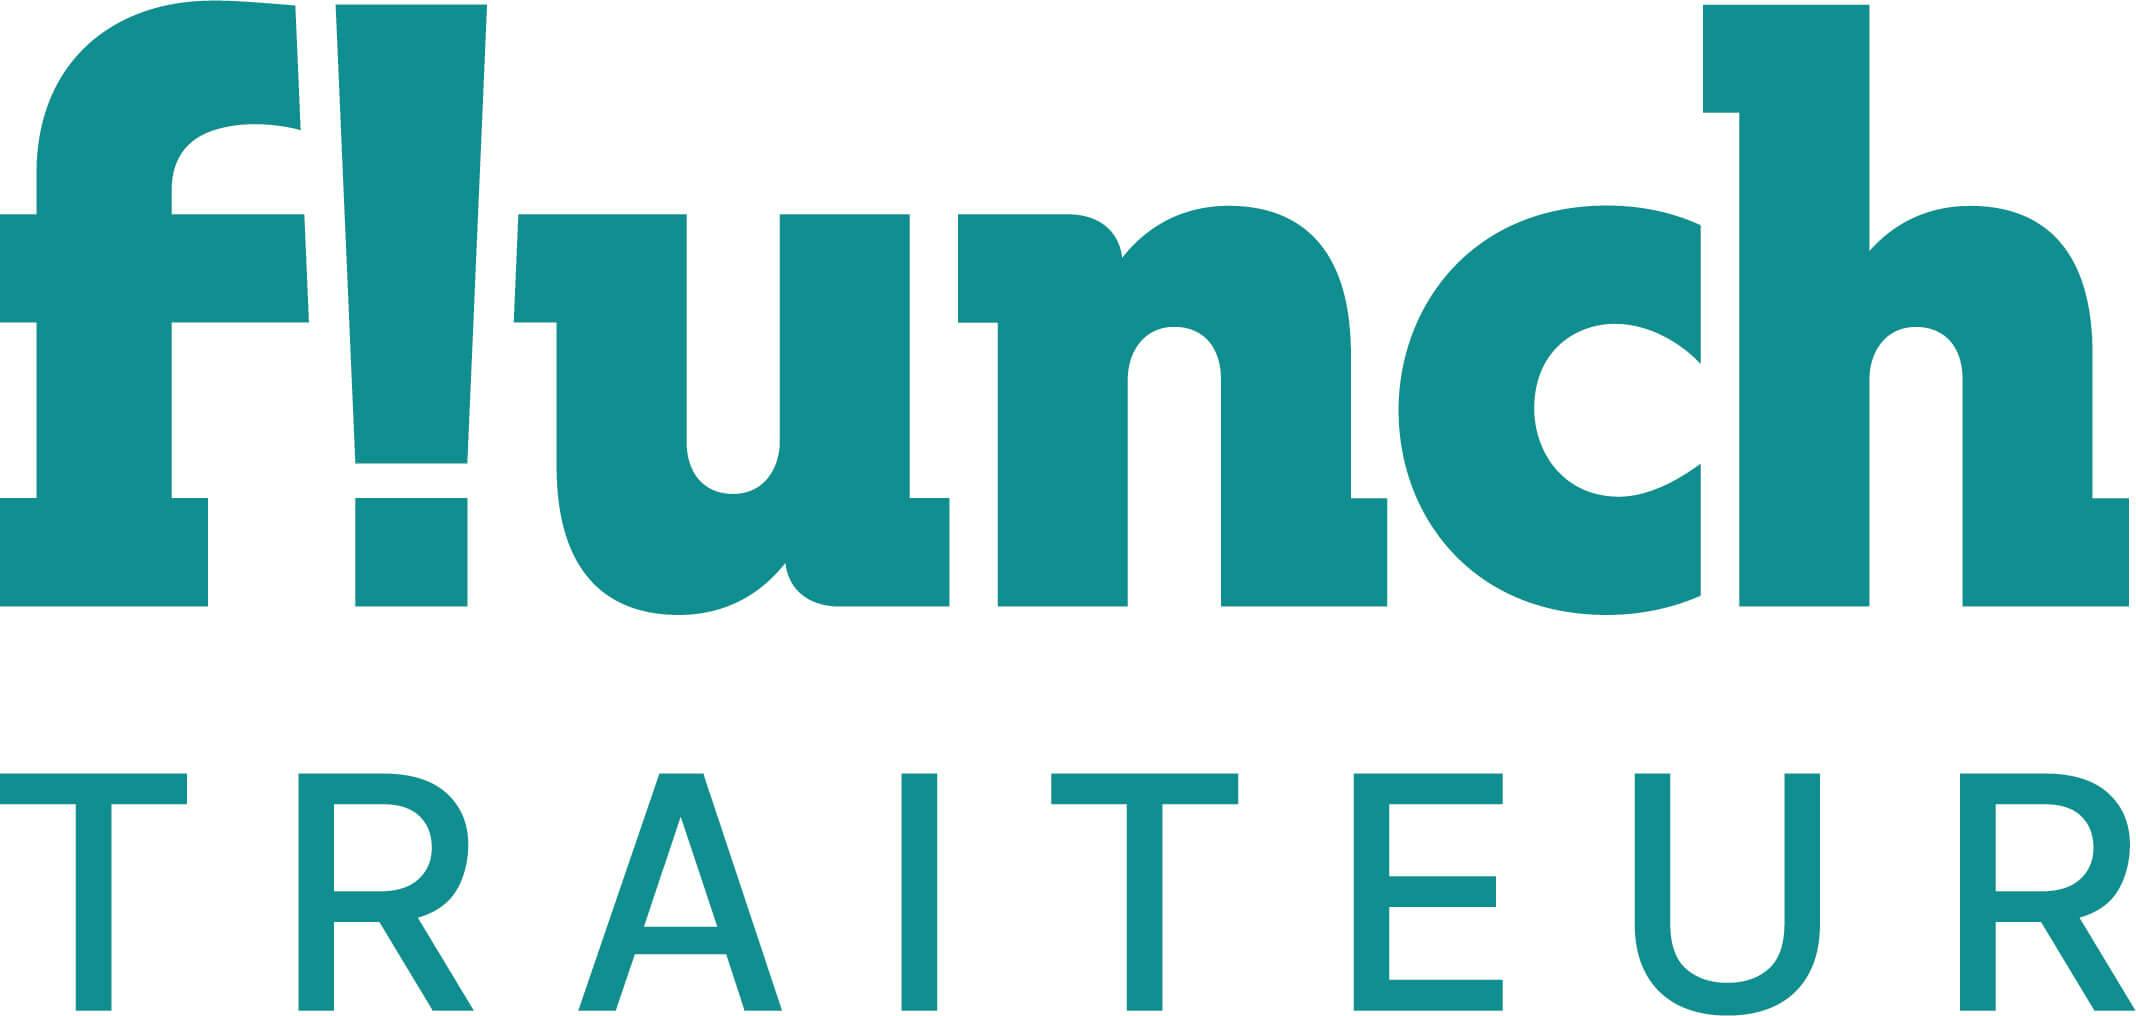 Logo Flunch Traiteur